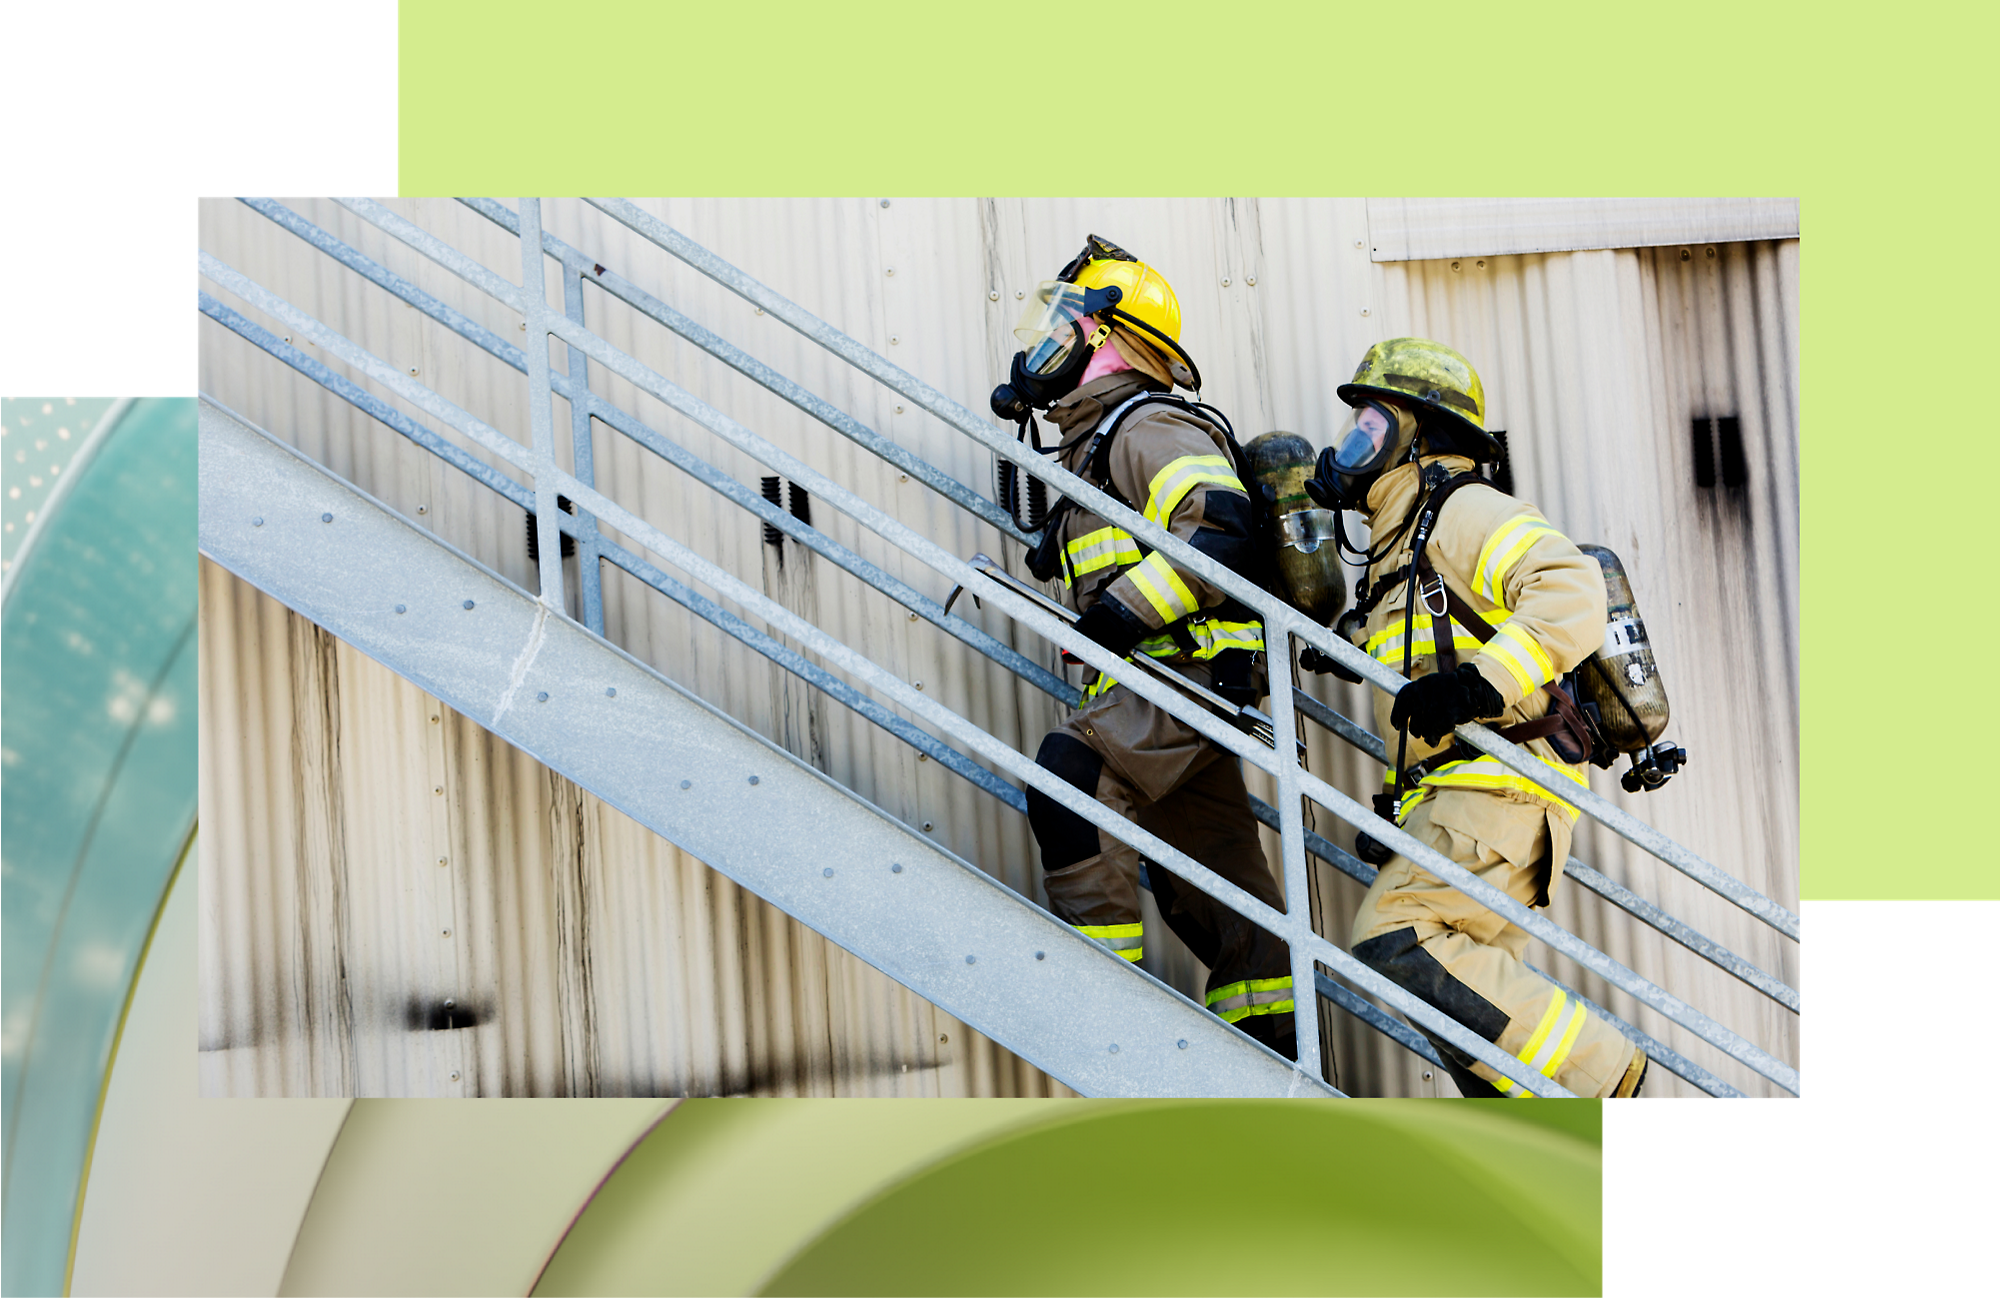 Dos bomberos con su equipo completo suben una escalera de metal exterior durante un simulacro de respuesta ante emergencias.